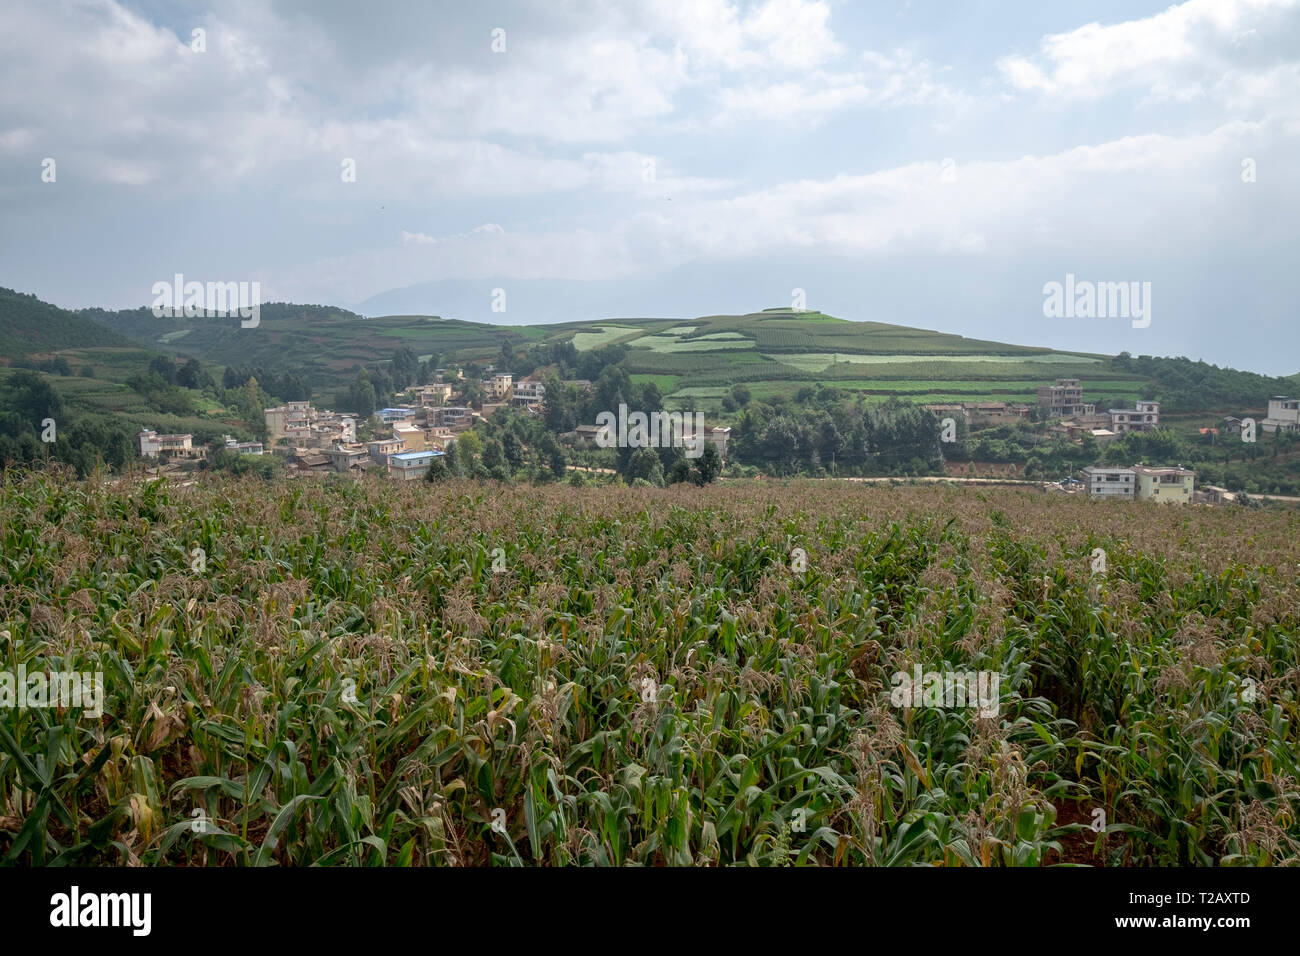 Ländliche landwirtschaftliche Landschaft aus sanften Hügeln mit Mais ernten. In der Nähe von Kumming, Provinz Yunnan im Südwesten Chinas im September fotografiert. Stockfoto